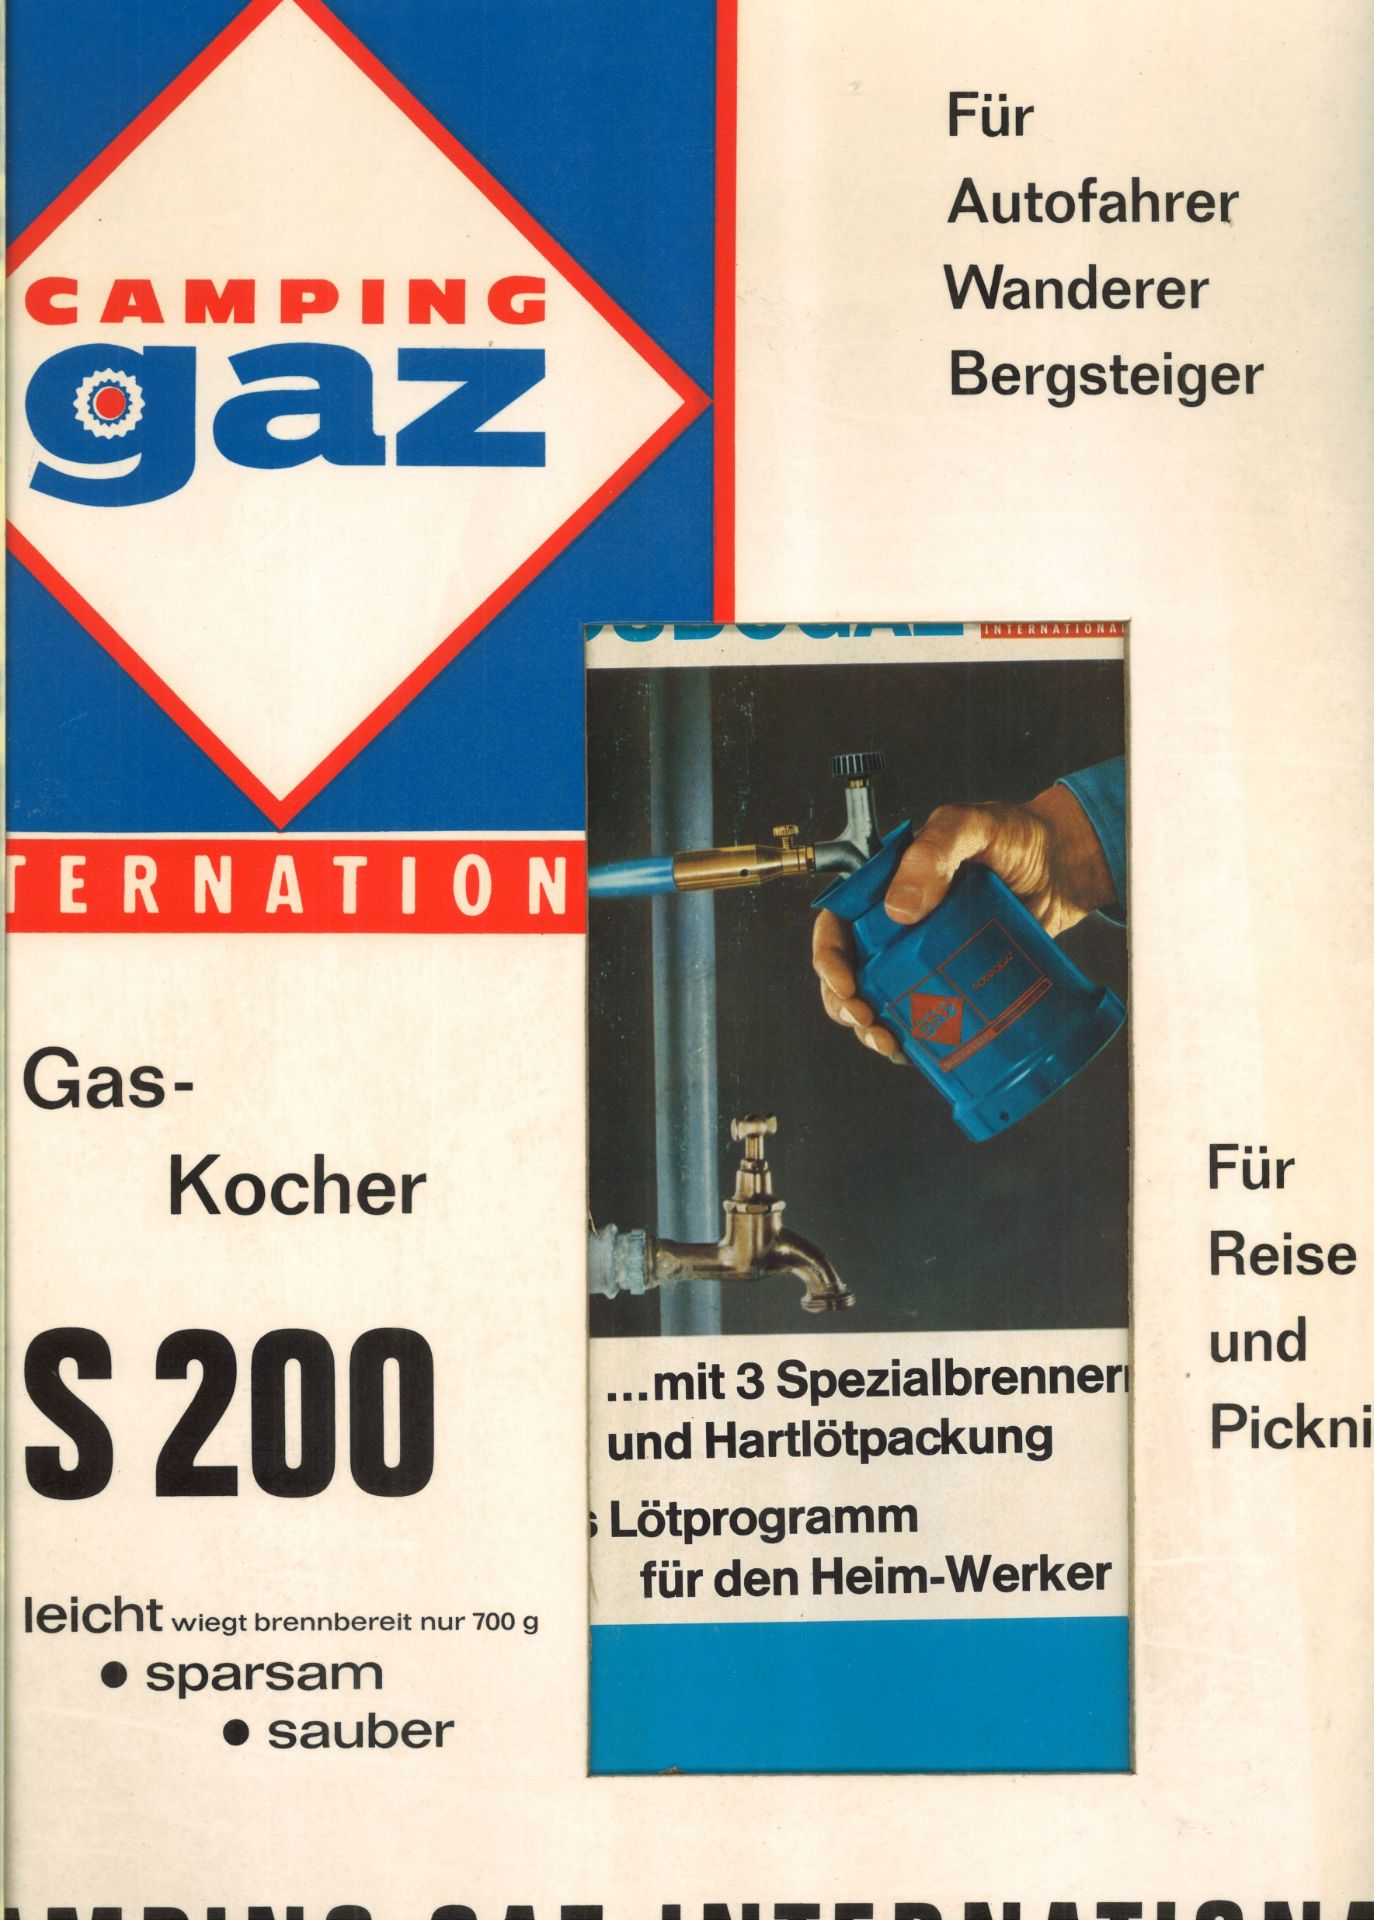 Werbeplakat und Papp - Aufsteller "Camping gaz" International, Gas-Kocher S 200 und Lötlampe, - Image 2 of 2